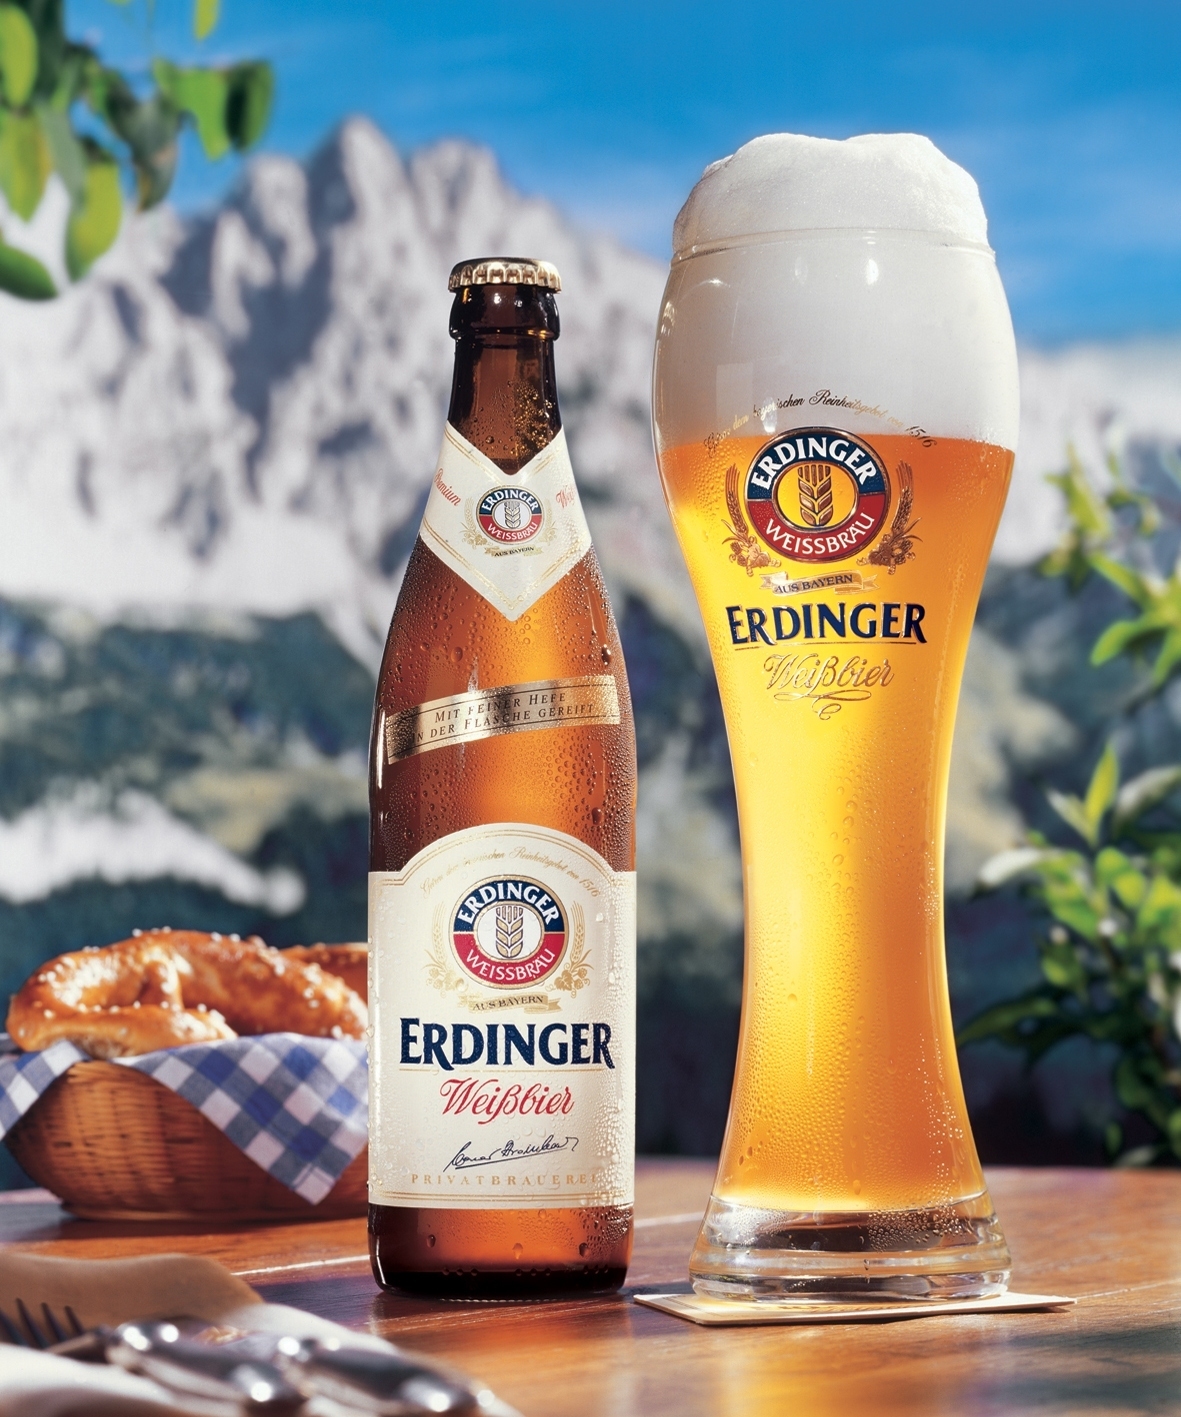 而金啤酒则是俗称的黄啤酒,也是很受德国人欢迎的种类之一,用上好的